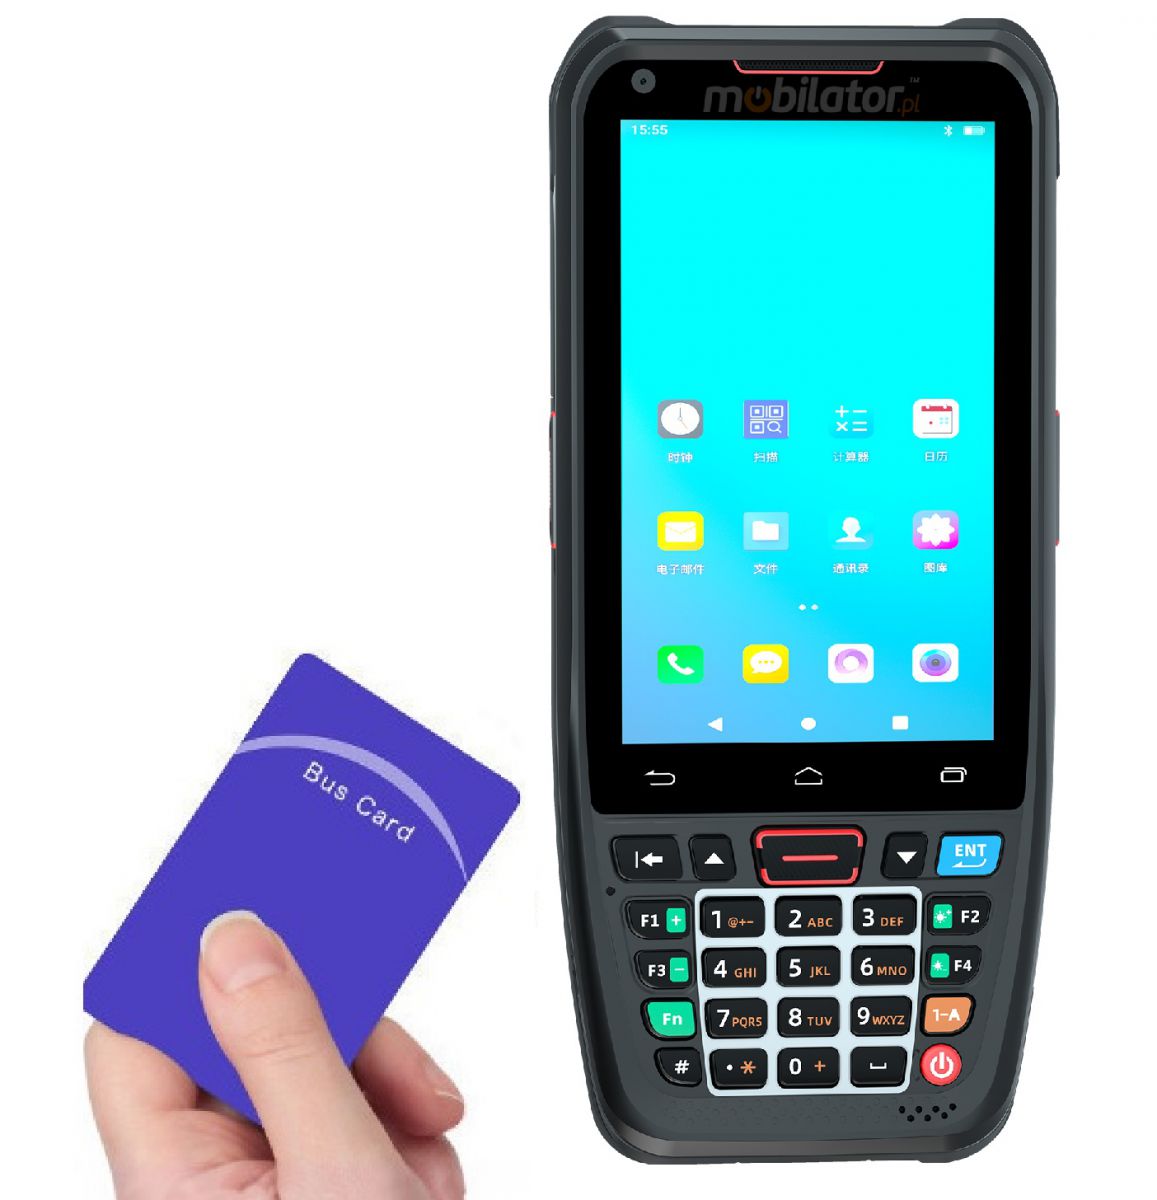 MobiPad L400N v.2 - Wytrzymay terminal danych, moduem NFC oraz skanerem kodw kreskowych 1D, norm IP66, 2GB RAM, 16GB ROM